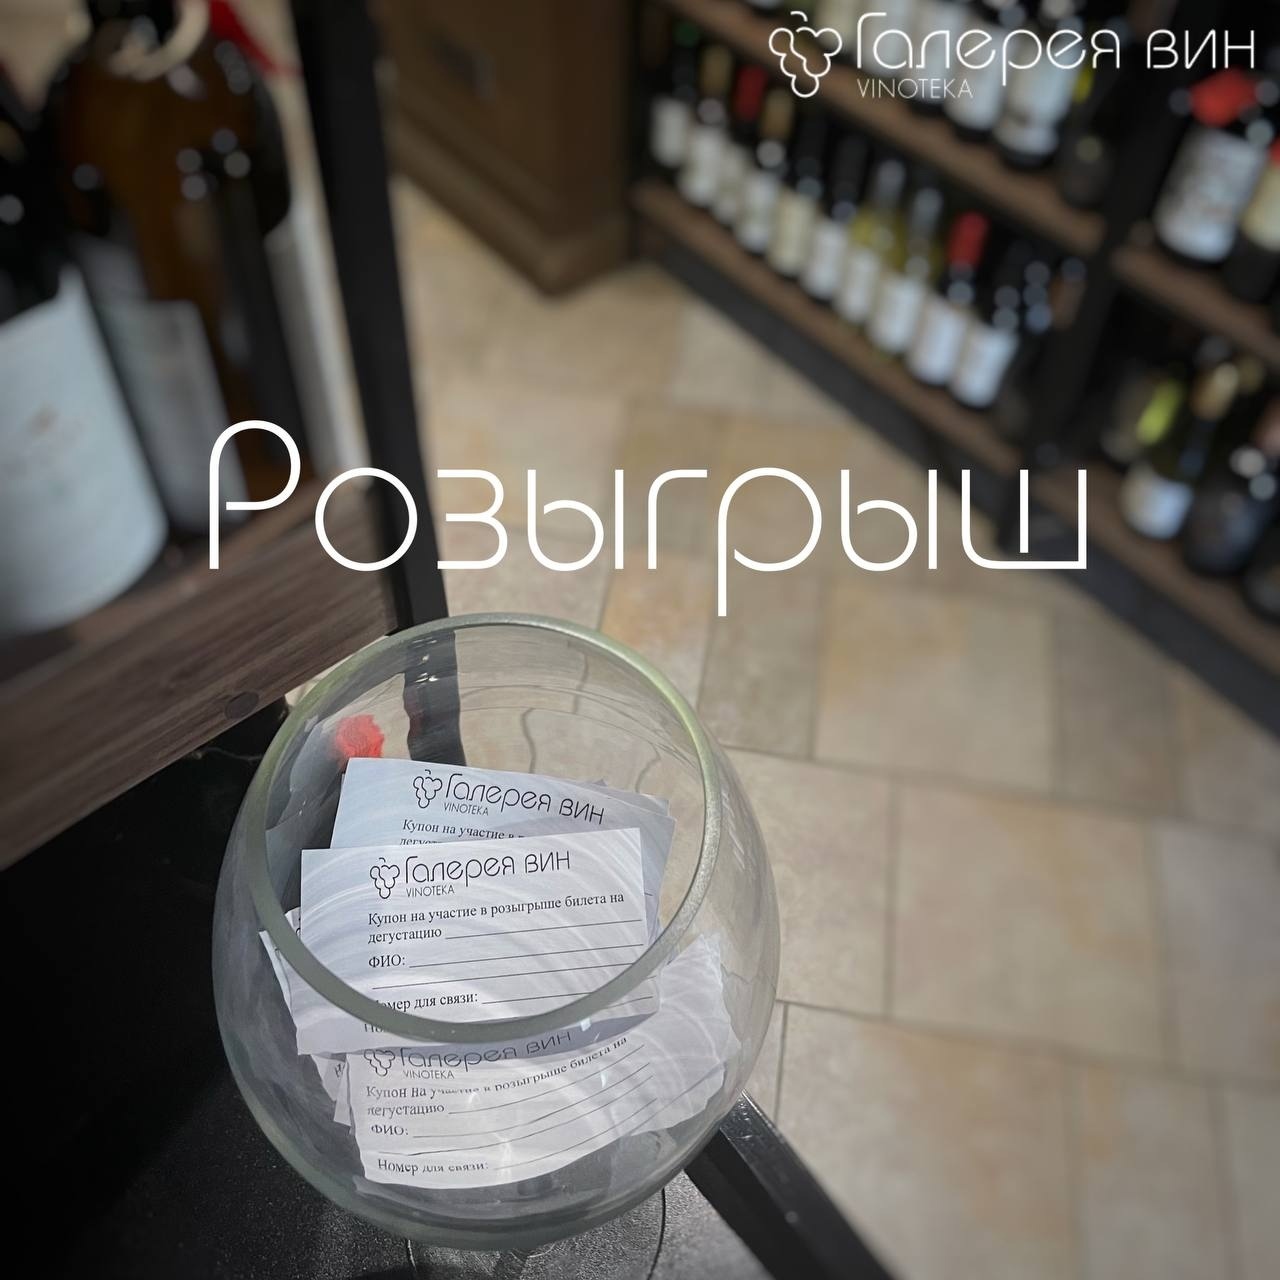 Розыгрыш — бесплатный билет на любую дегустацию в винотеке «Галерея вин» в Казани